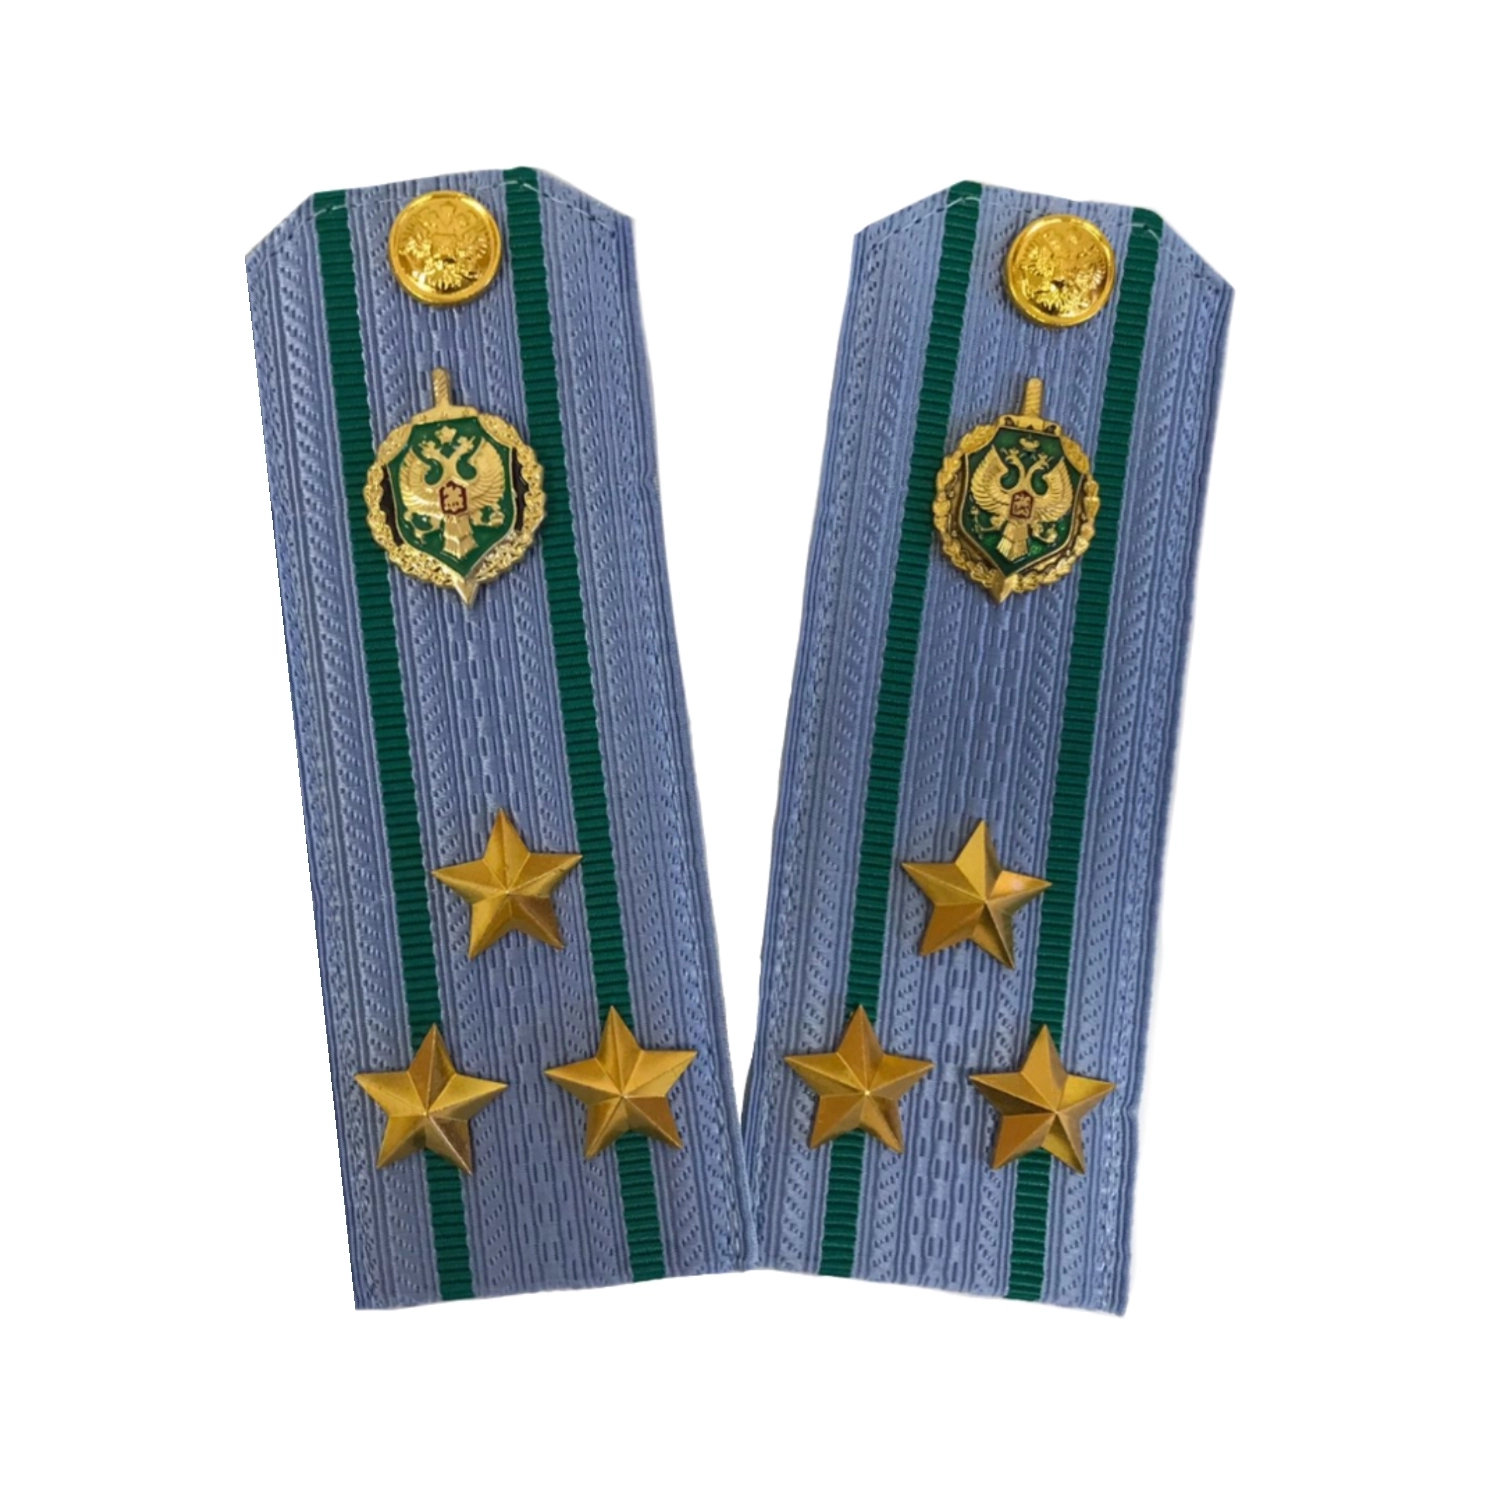 Погоны Пограничной службы ПС ФСБ в сборе картон на рубашку звание Полковник